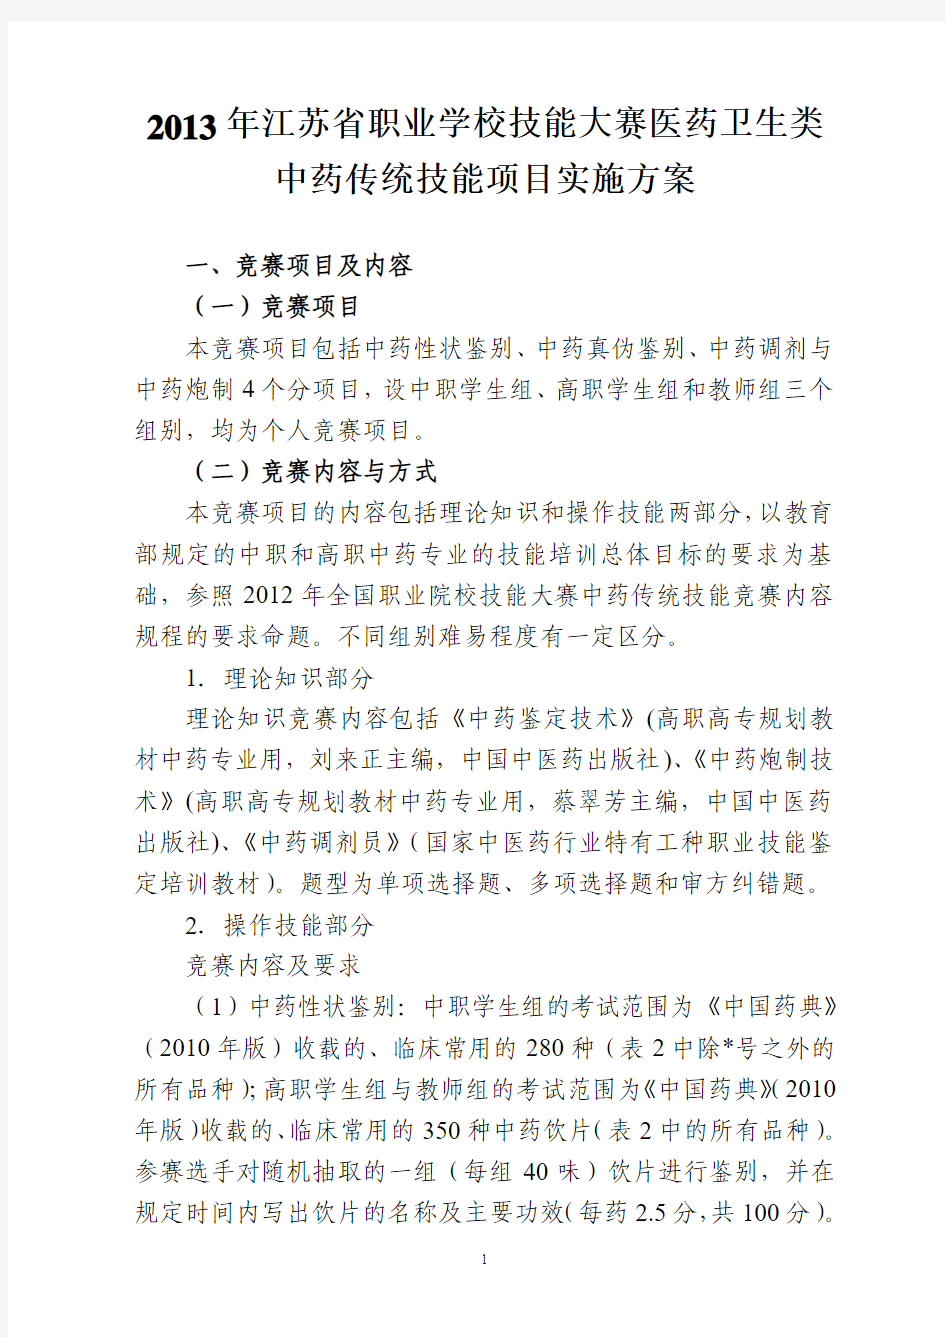 2013年江苏省职业学校技能大赛医药卫生类 中药传统技能项目实施方案